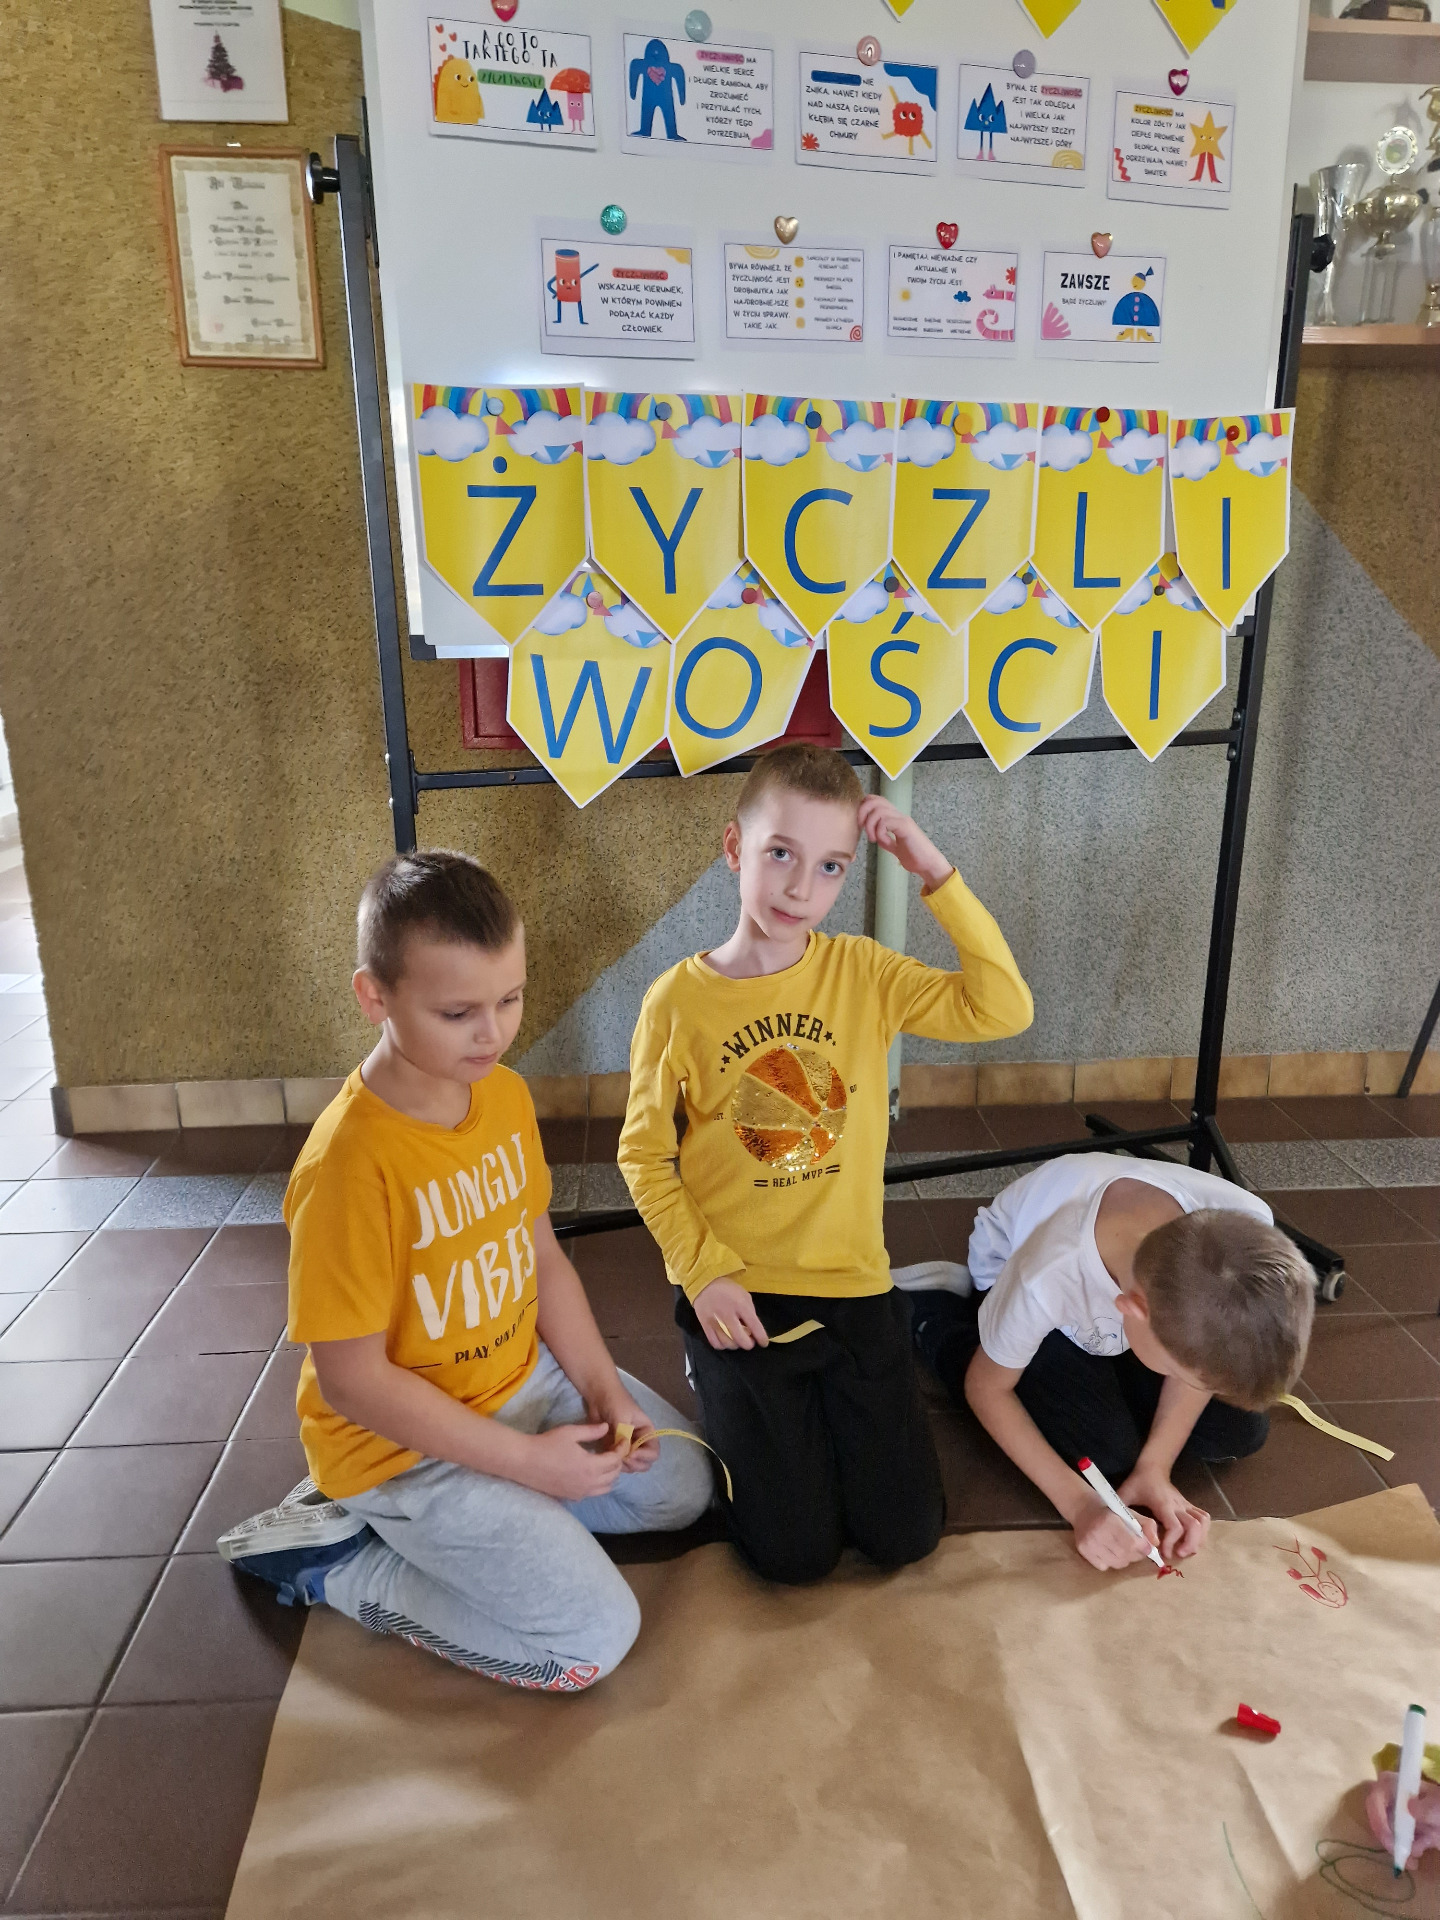 Trzej uczniowie siedzący  pod tablicą  z dekoracją, zamierzają  narysować  stworka życzliwości 